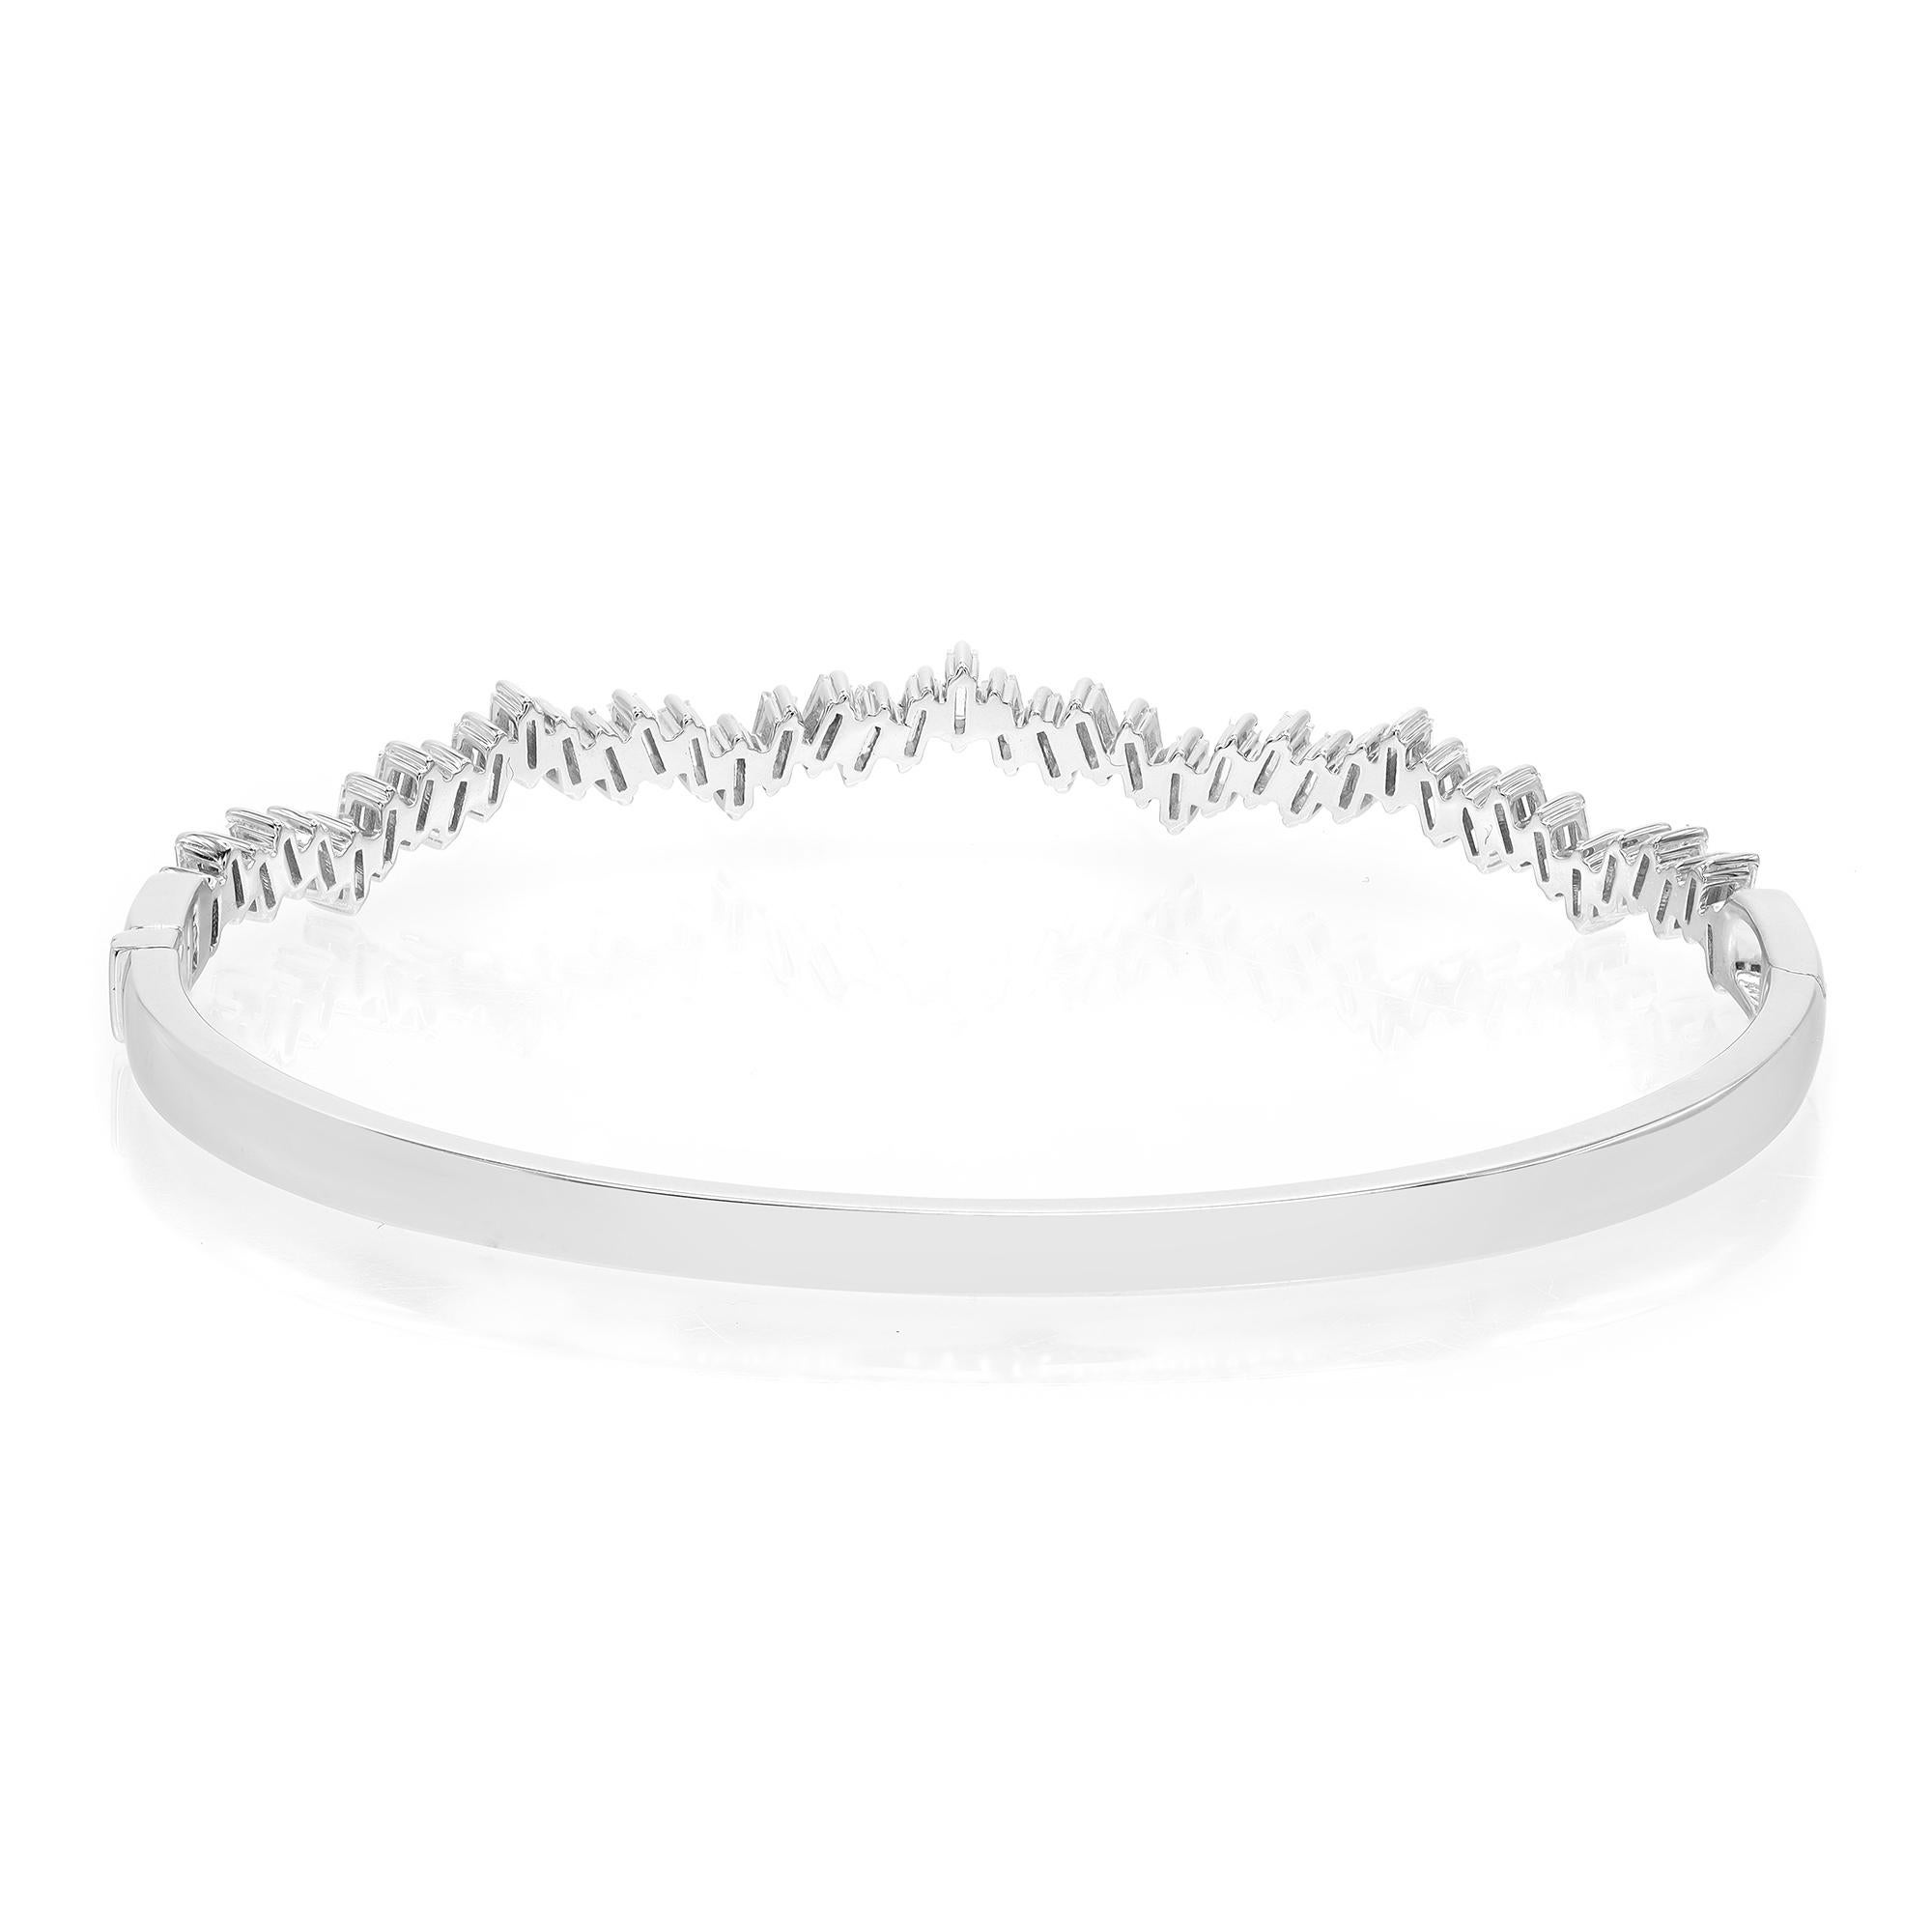 Rachel Koen Baguette Cut Diamond Bangle Bracelet 18K White Gold 1.57Cttw In New Condition For Sale In New York, NY